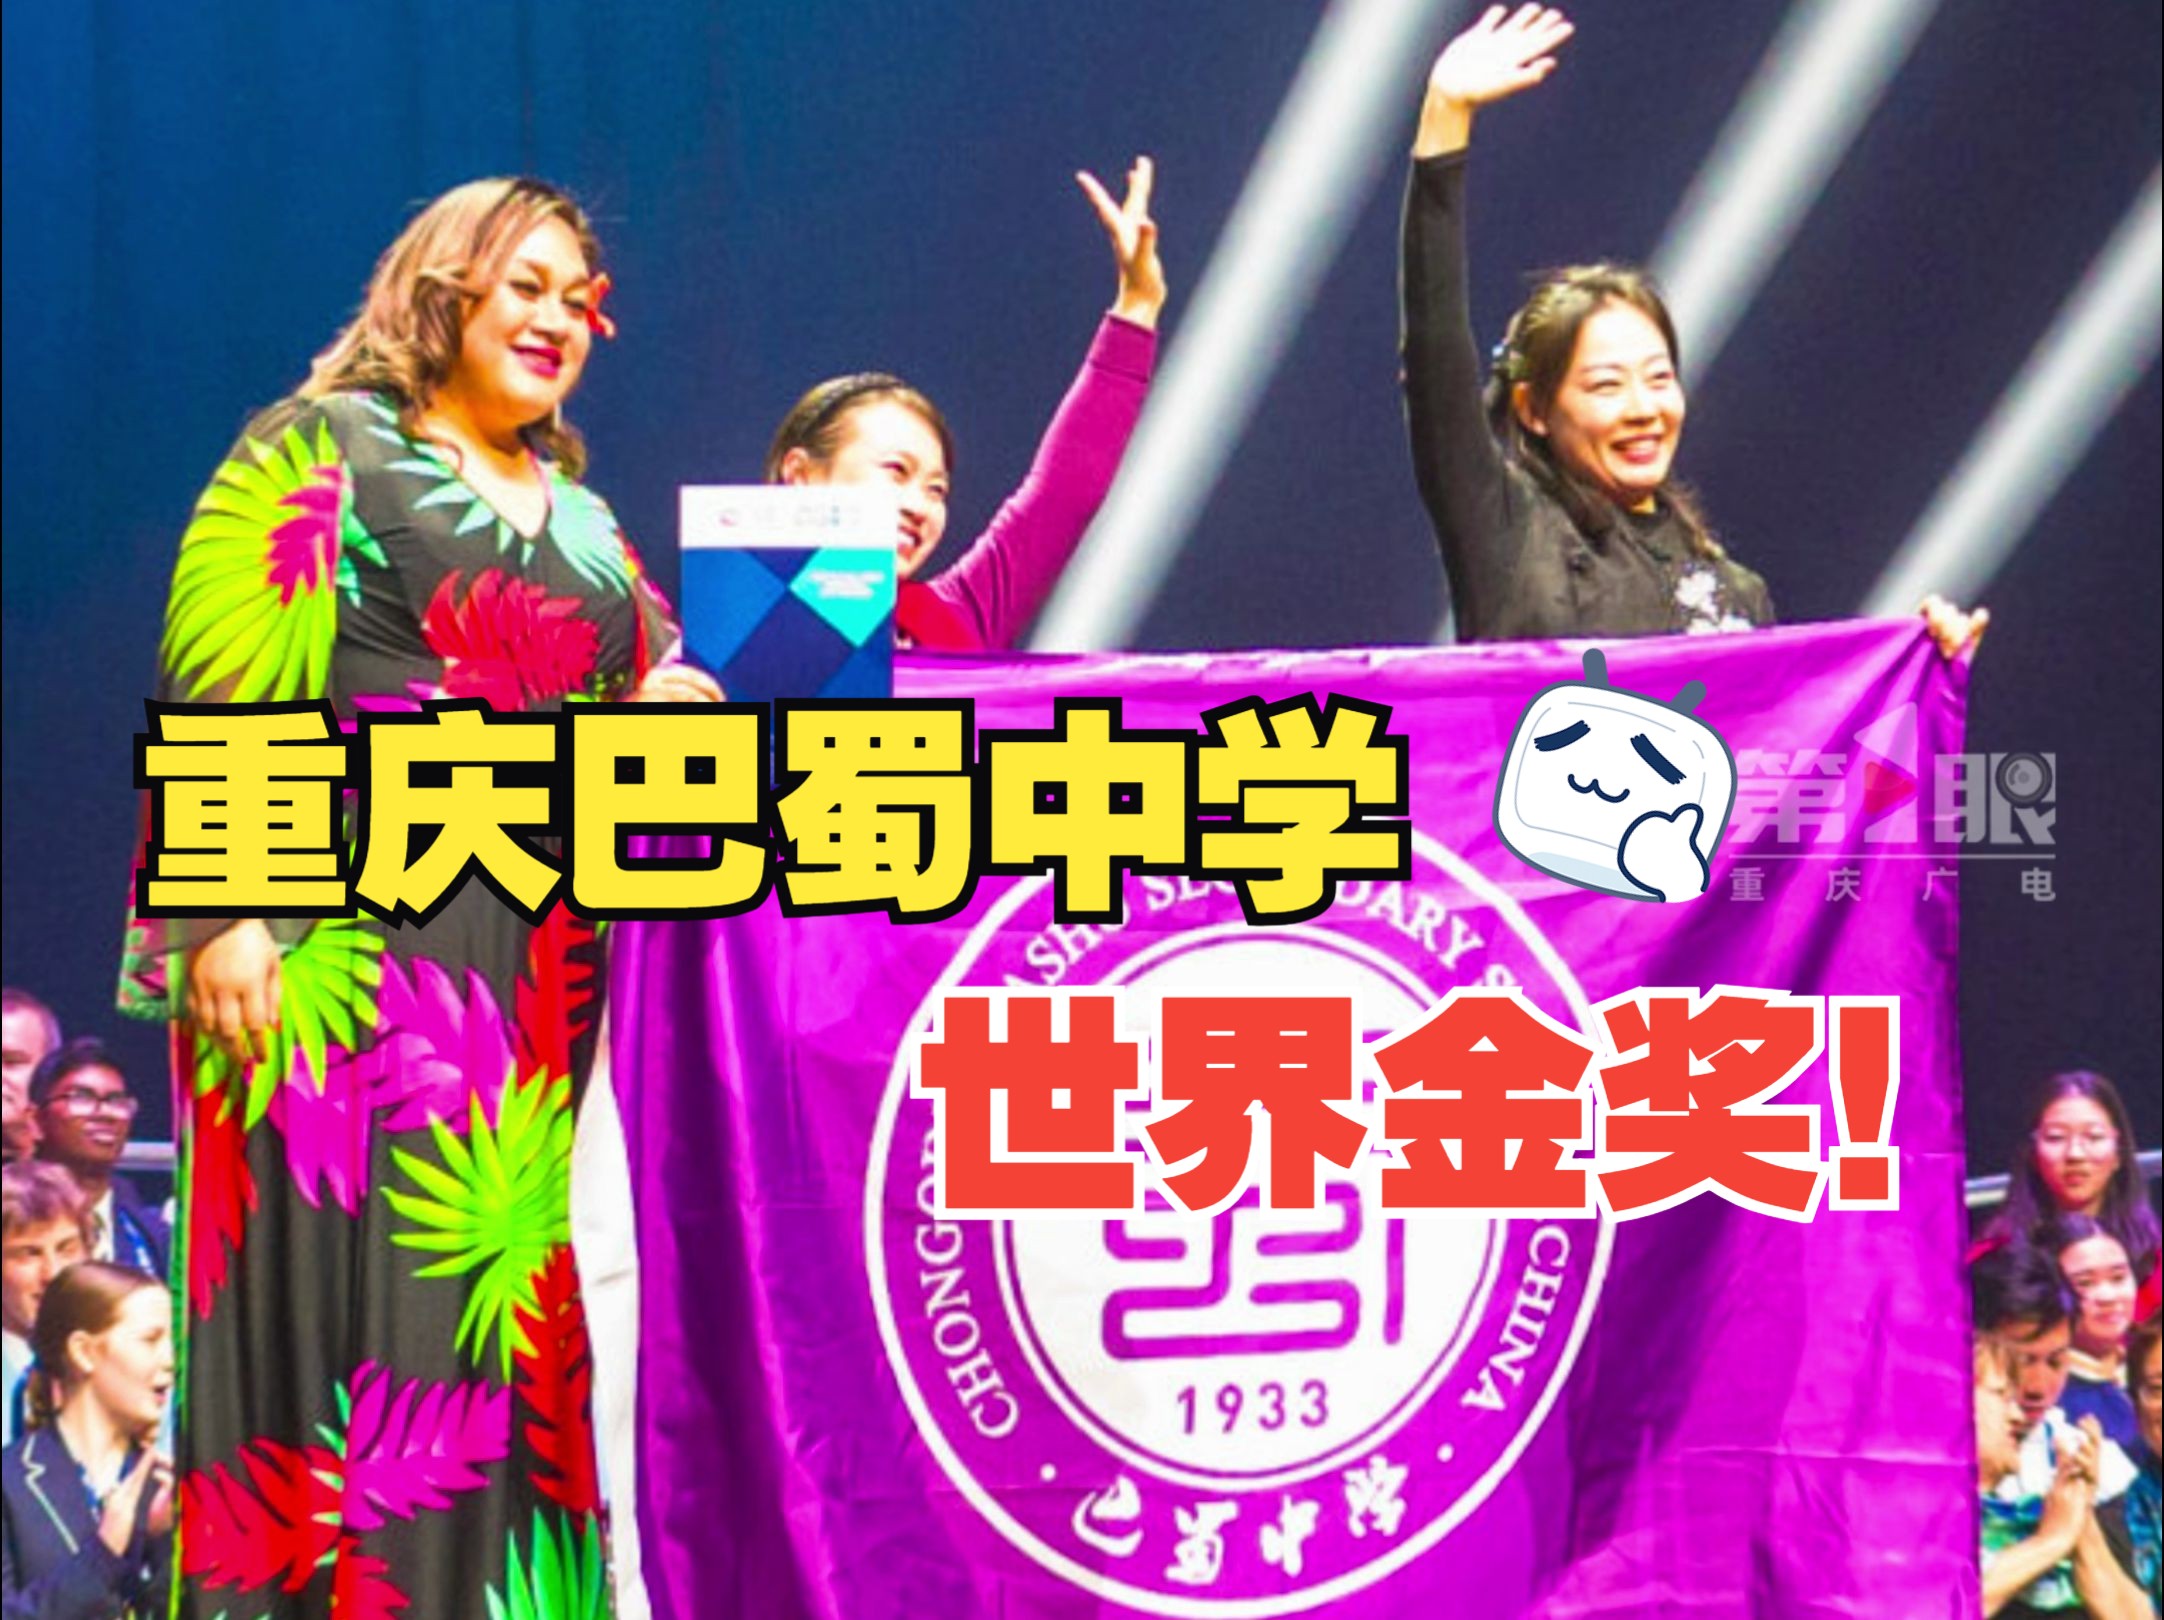 重庆巴蜀中学合唱团斩获第十三届世界合唱比赛金奖!